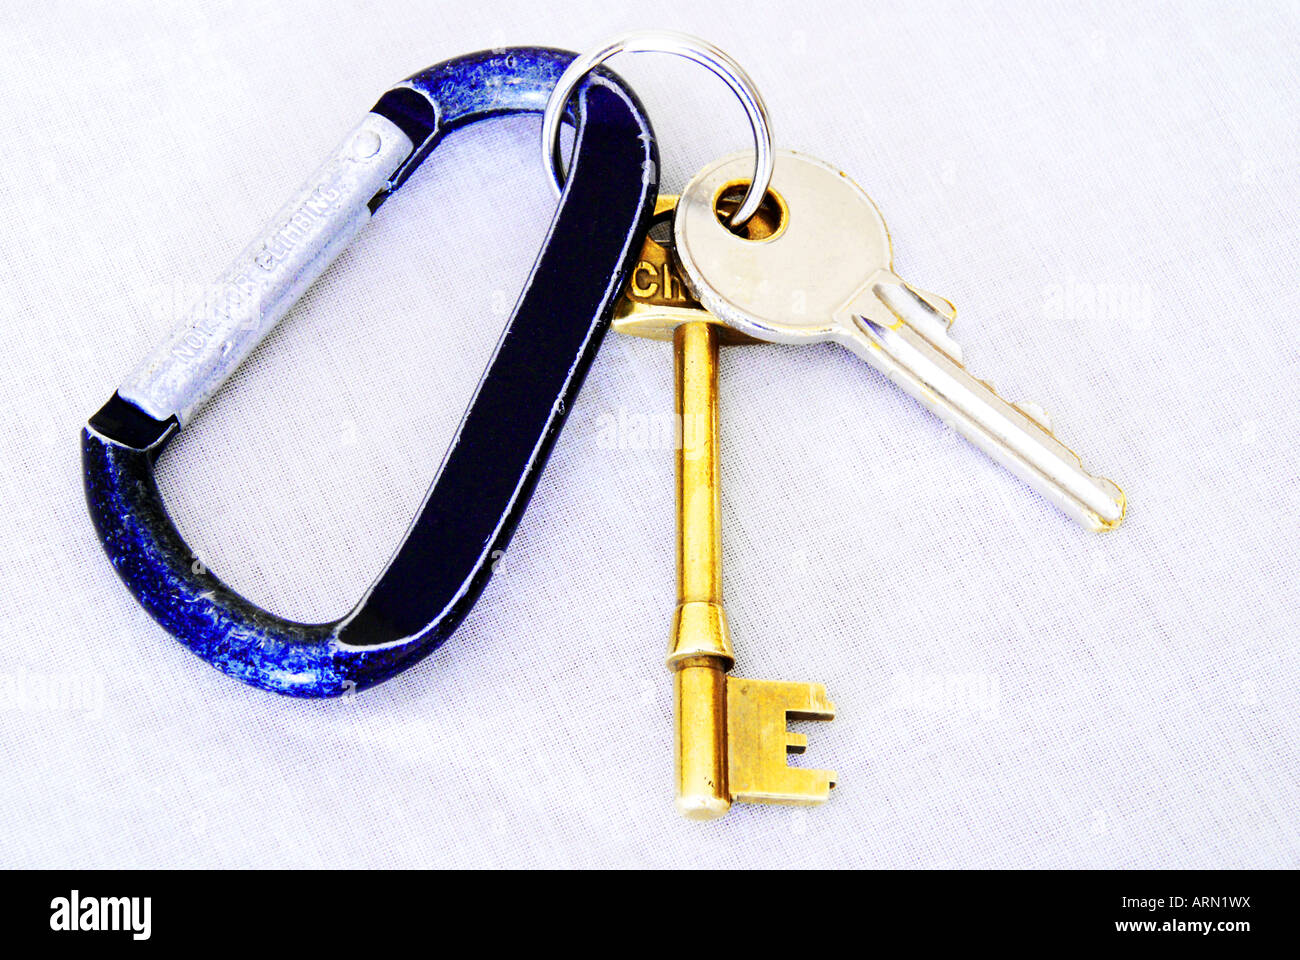 Keys and key ring Stock Photo